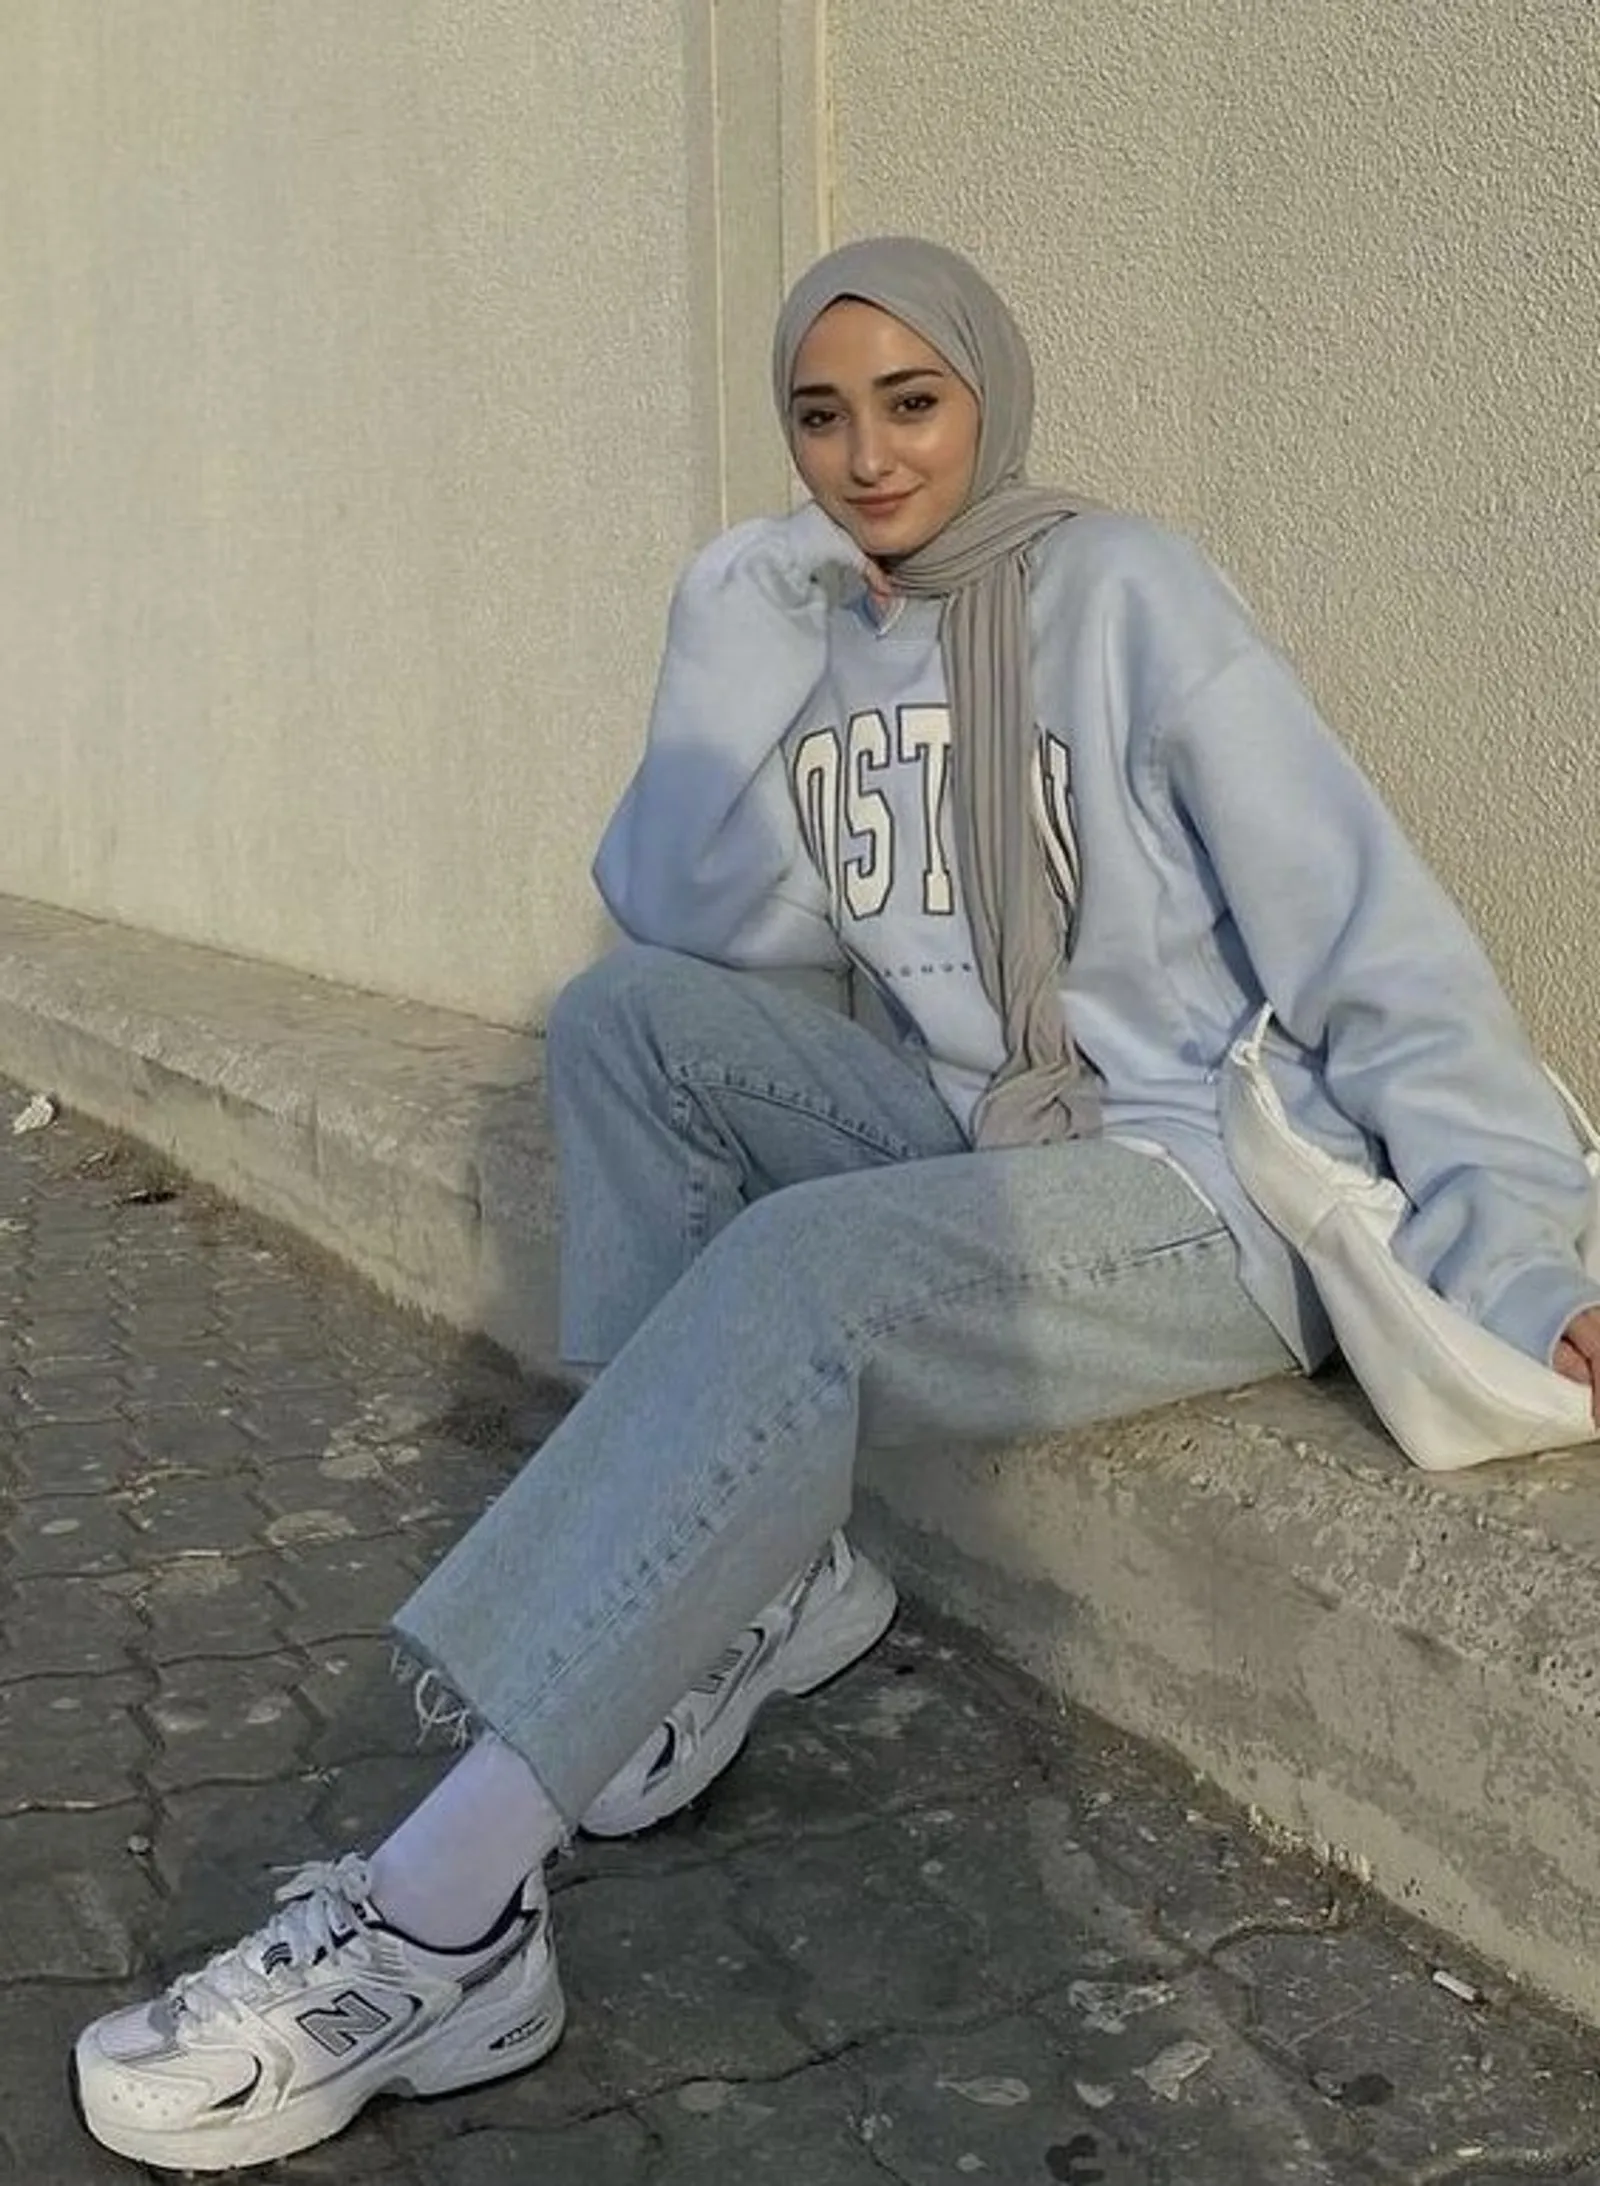 12 Warna Jilbab yang Cocok untuk Baju Biru Denim, Elegan!